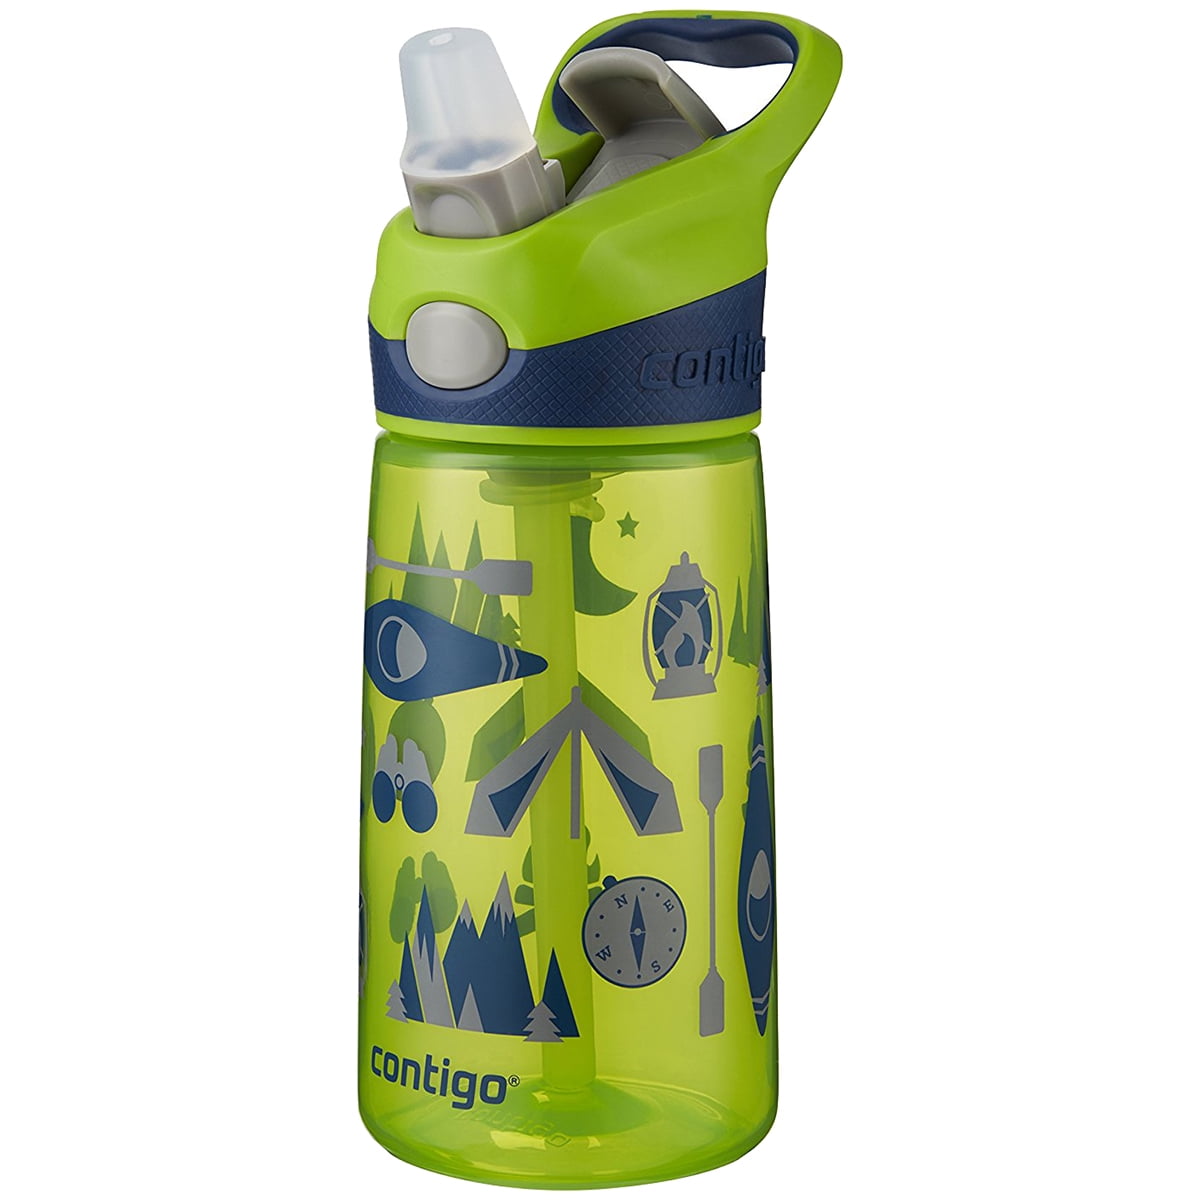 Contigo Kids Water Bottle, Striker No-Spill, Petal Pink, 14 Ounce, Pantry